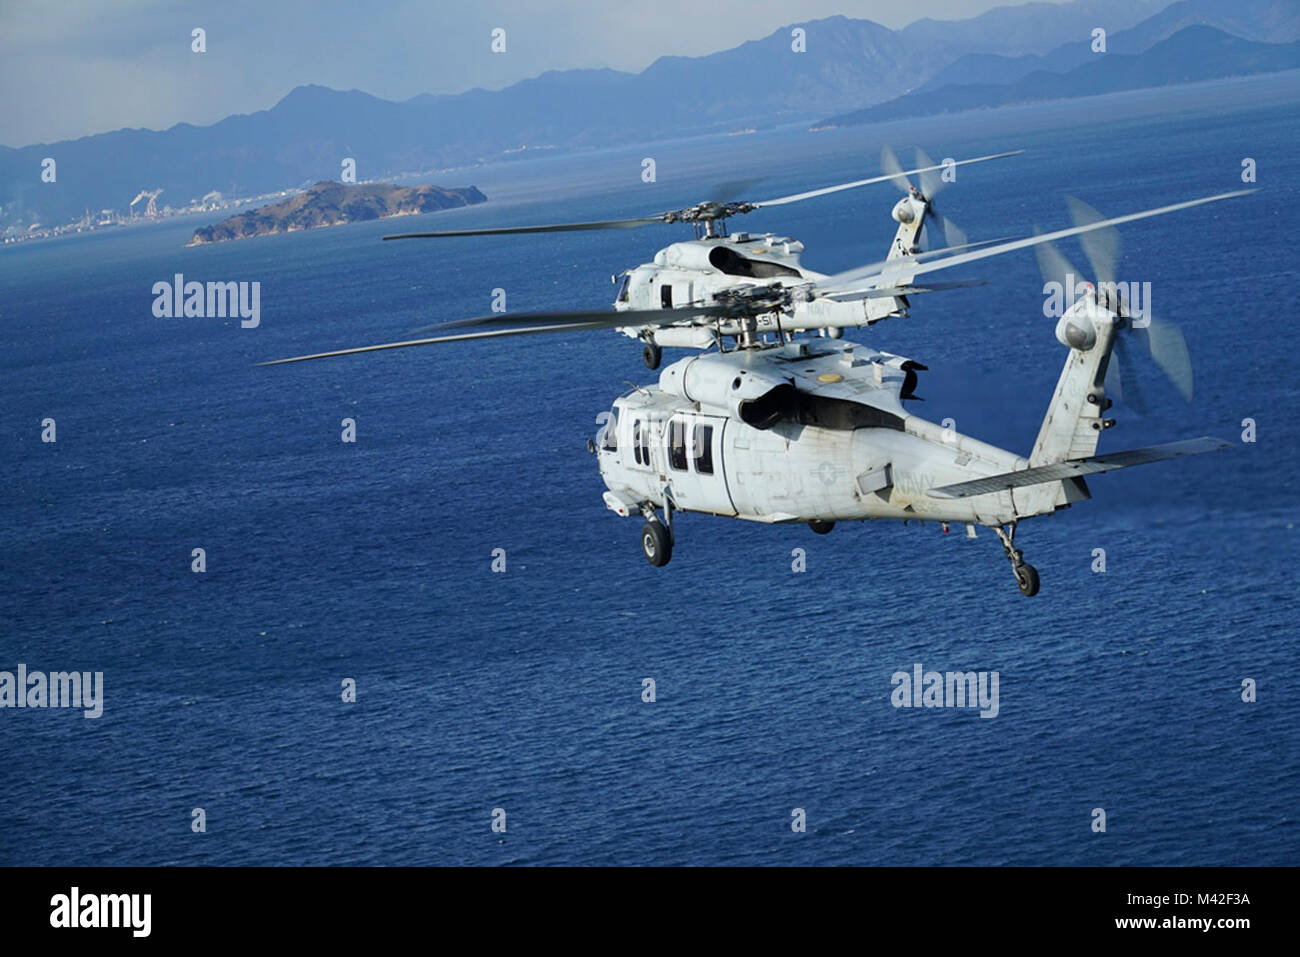 HIROSHIMA, JAPON (janv. 25, 2018) La Marine américaine MH-60R et MH-60S hélicoptères Seahawk, affecté à l'Escadron d'hélicoptères grève maritime (HSM) 51 et d'hélicoptères de combat de la mer (HSC) de l'Escadron 25 rendezvous au large de Hiroshima après une grève de la coordination et de reconnaissance de la mission de formation de Iwakuni Marine Corps Air Station. L'avant-déployé à Atsugi Naval Air Facility, HSC 25 6 détachement mené plusieurs la formation en cours d'Iwakuni à rencontrer des F-35B Joint Strike Fighter Pilots of Marine Fighter Attack Squadron VMFA-121 (121). Les vols avec le HSM 51 étaient destinés à améliorer la surface warfare Banque D'Images